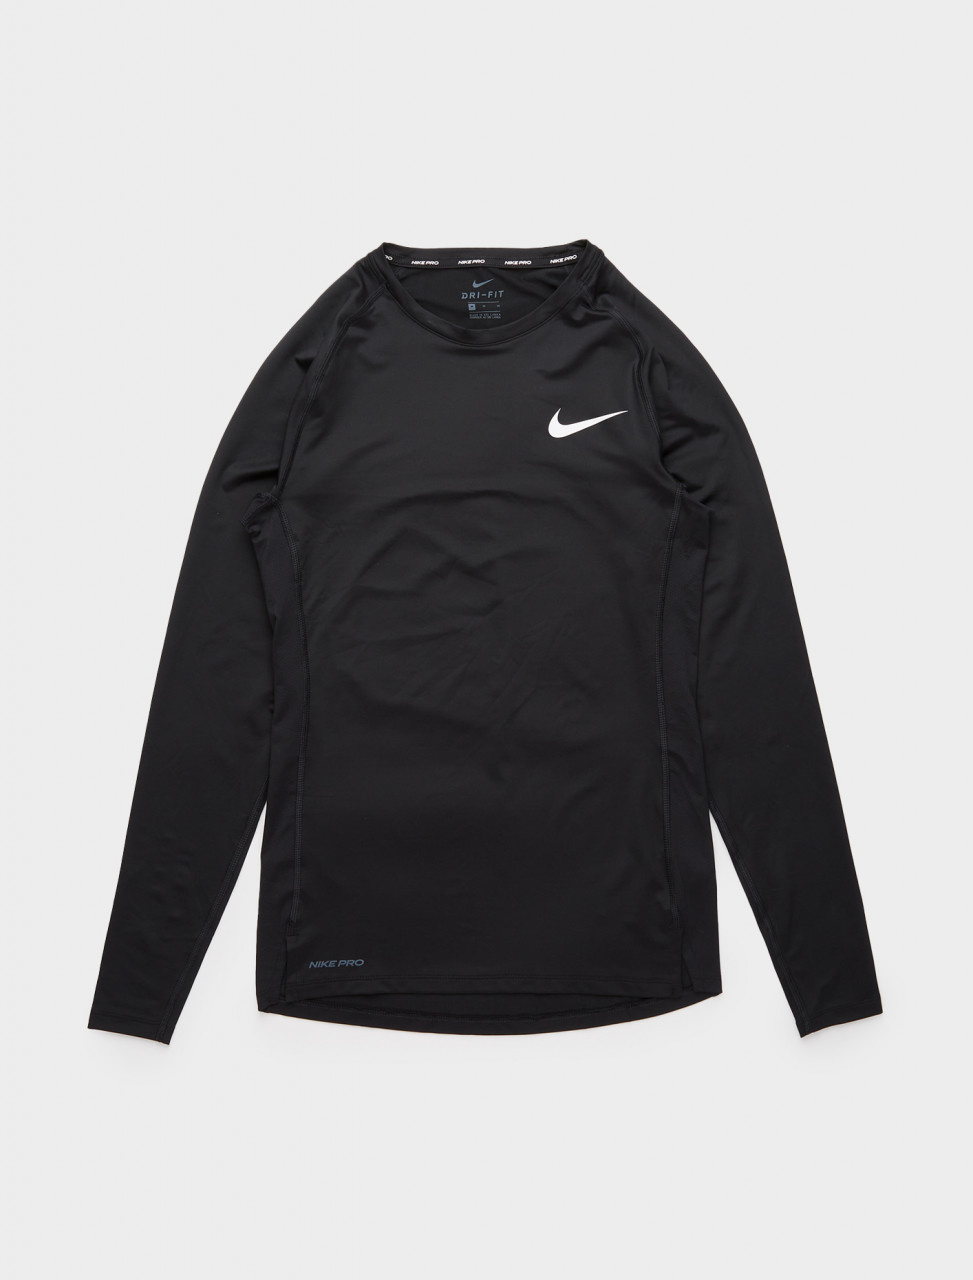 Nike Pro Long Sleeve in Black | Voo Store Berlin | Worldwide Shipping